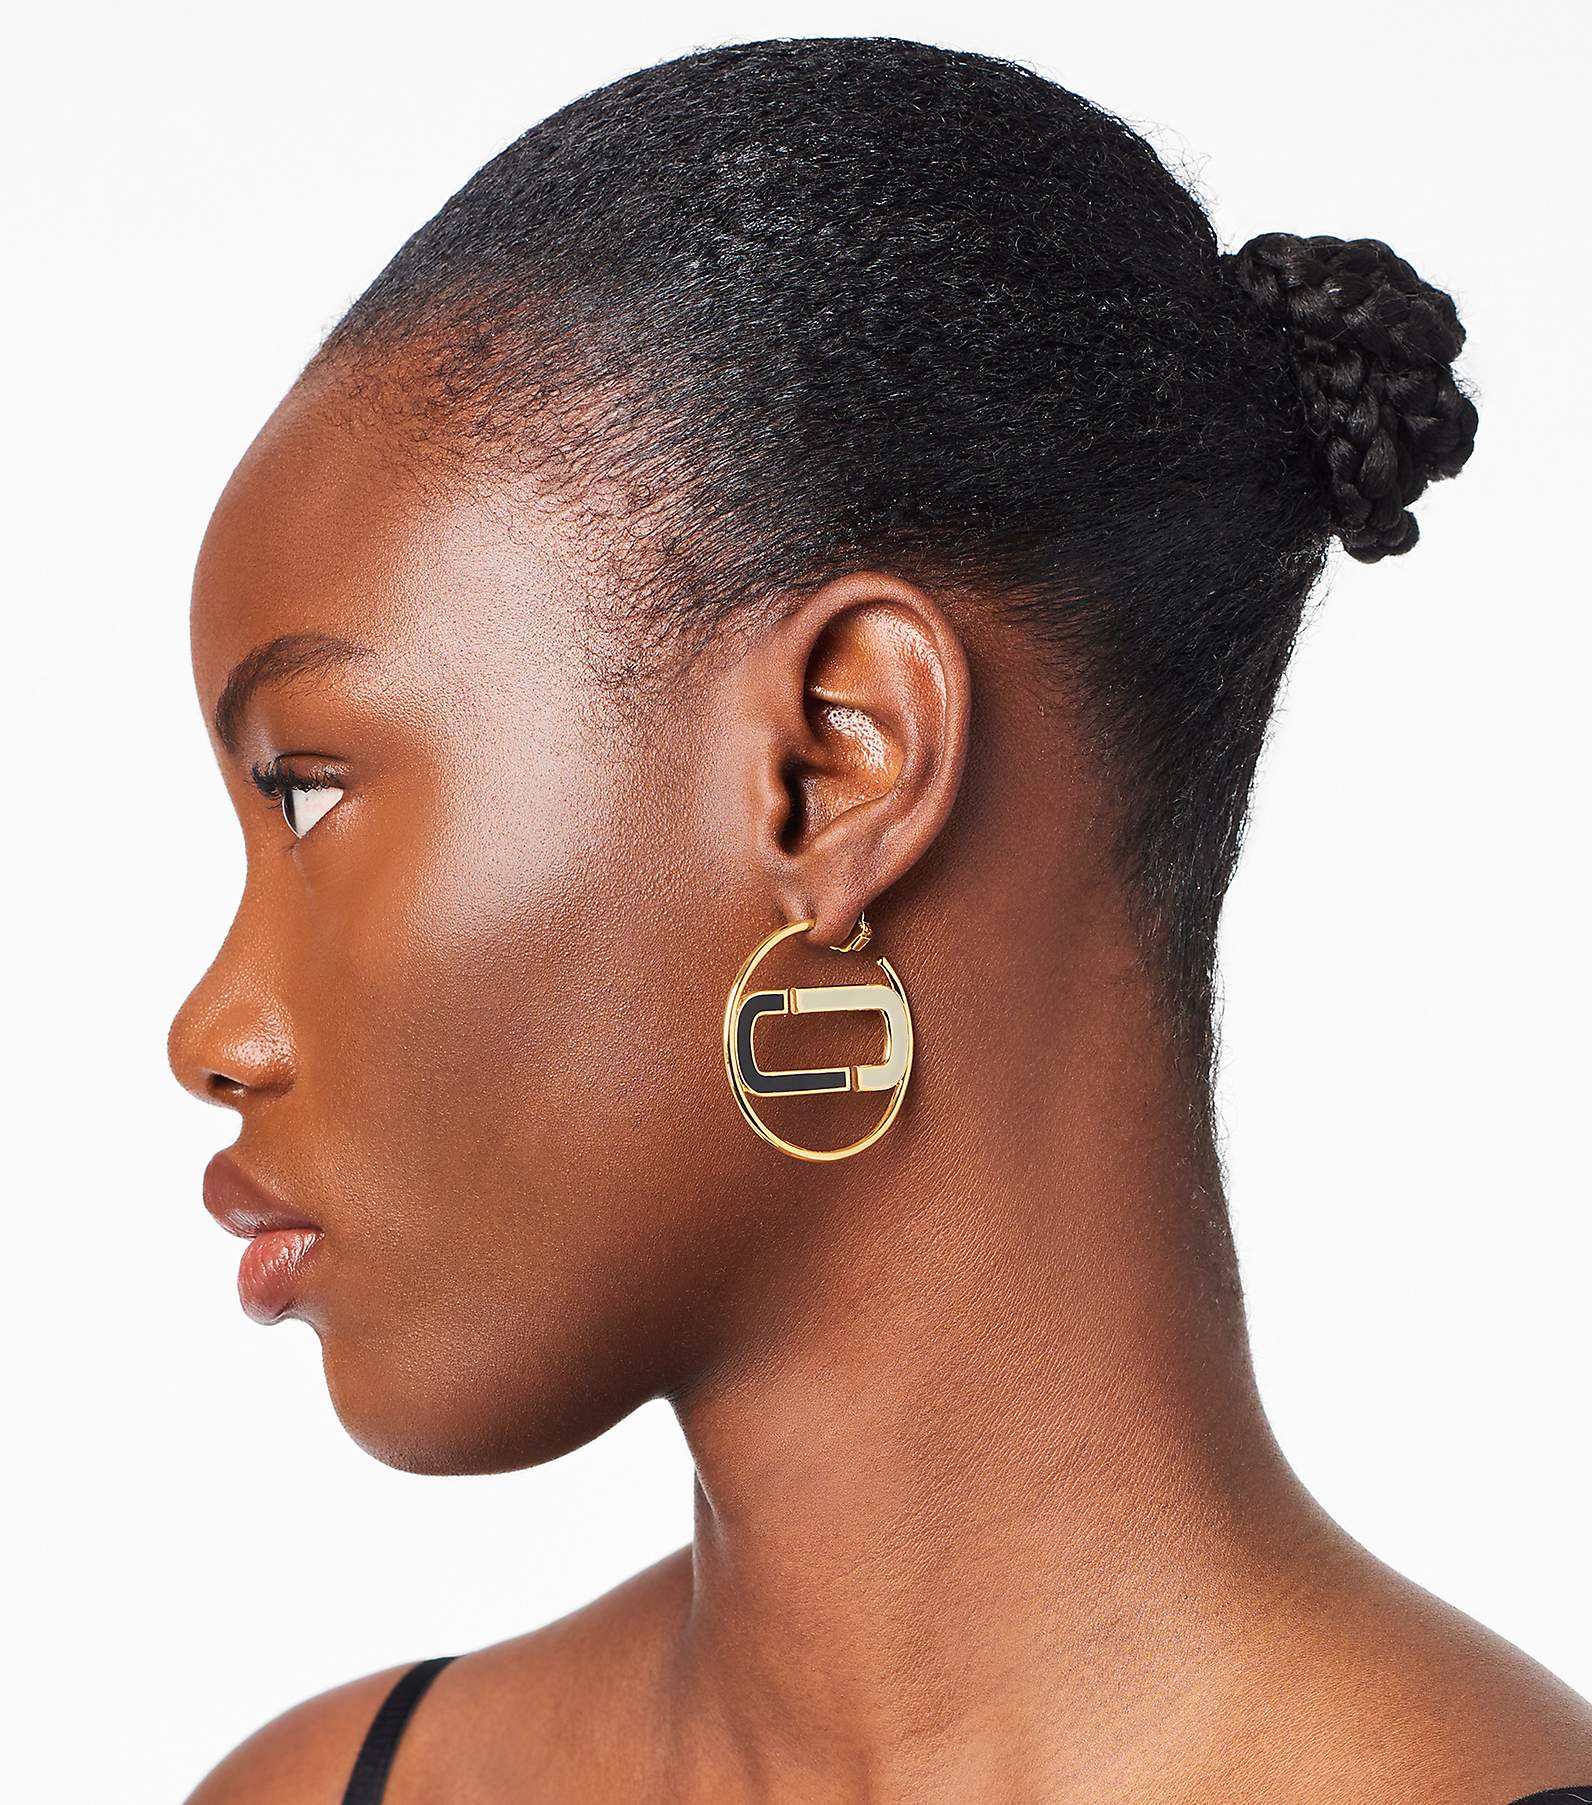 Marc Jacobs Large Enamel Hoop Earrings